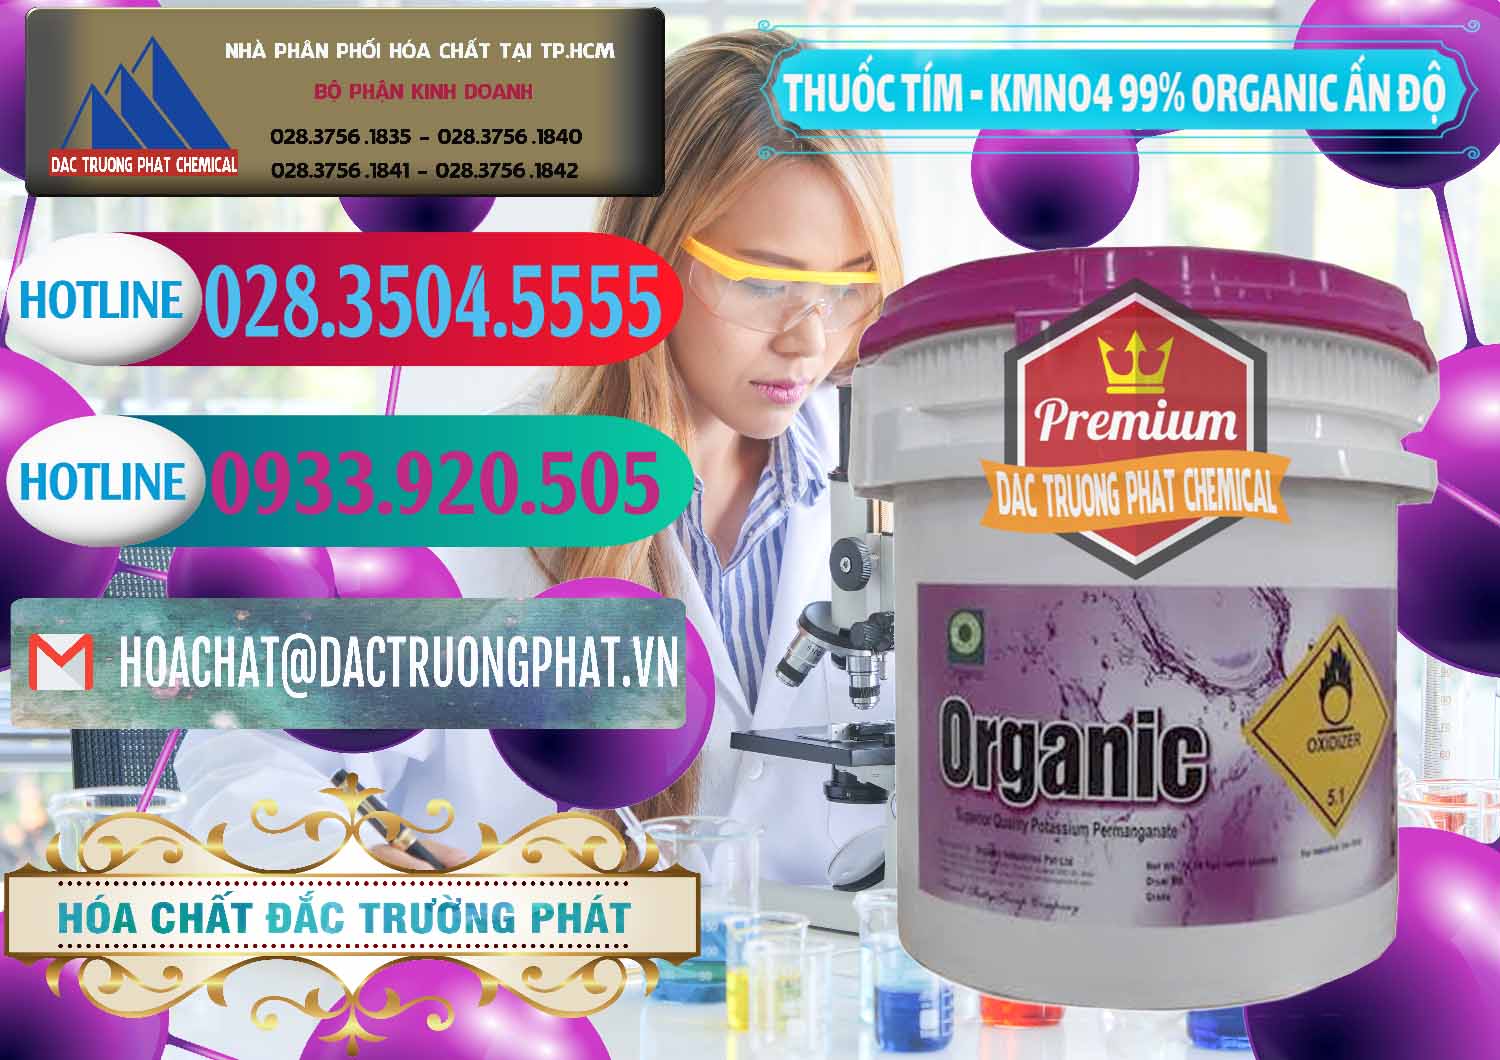 Cty kinh doanh - bán Thuốc Tím - KMNO4 99% Organic Ấn Độ India - 0216 - Cty chuyên phân phối ( cung ứng ) hóa chất tại TP.HCM - truongphat.vn